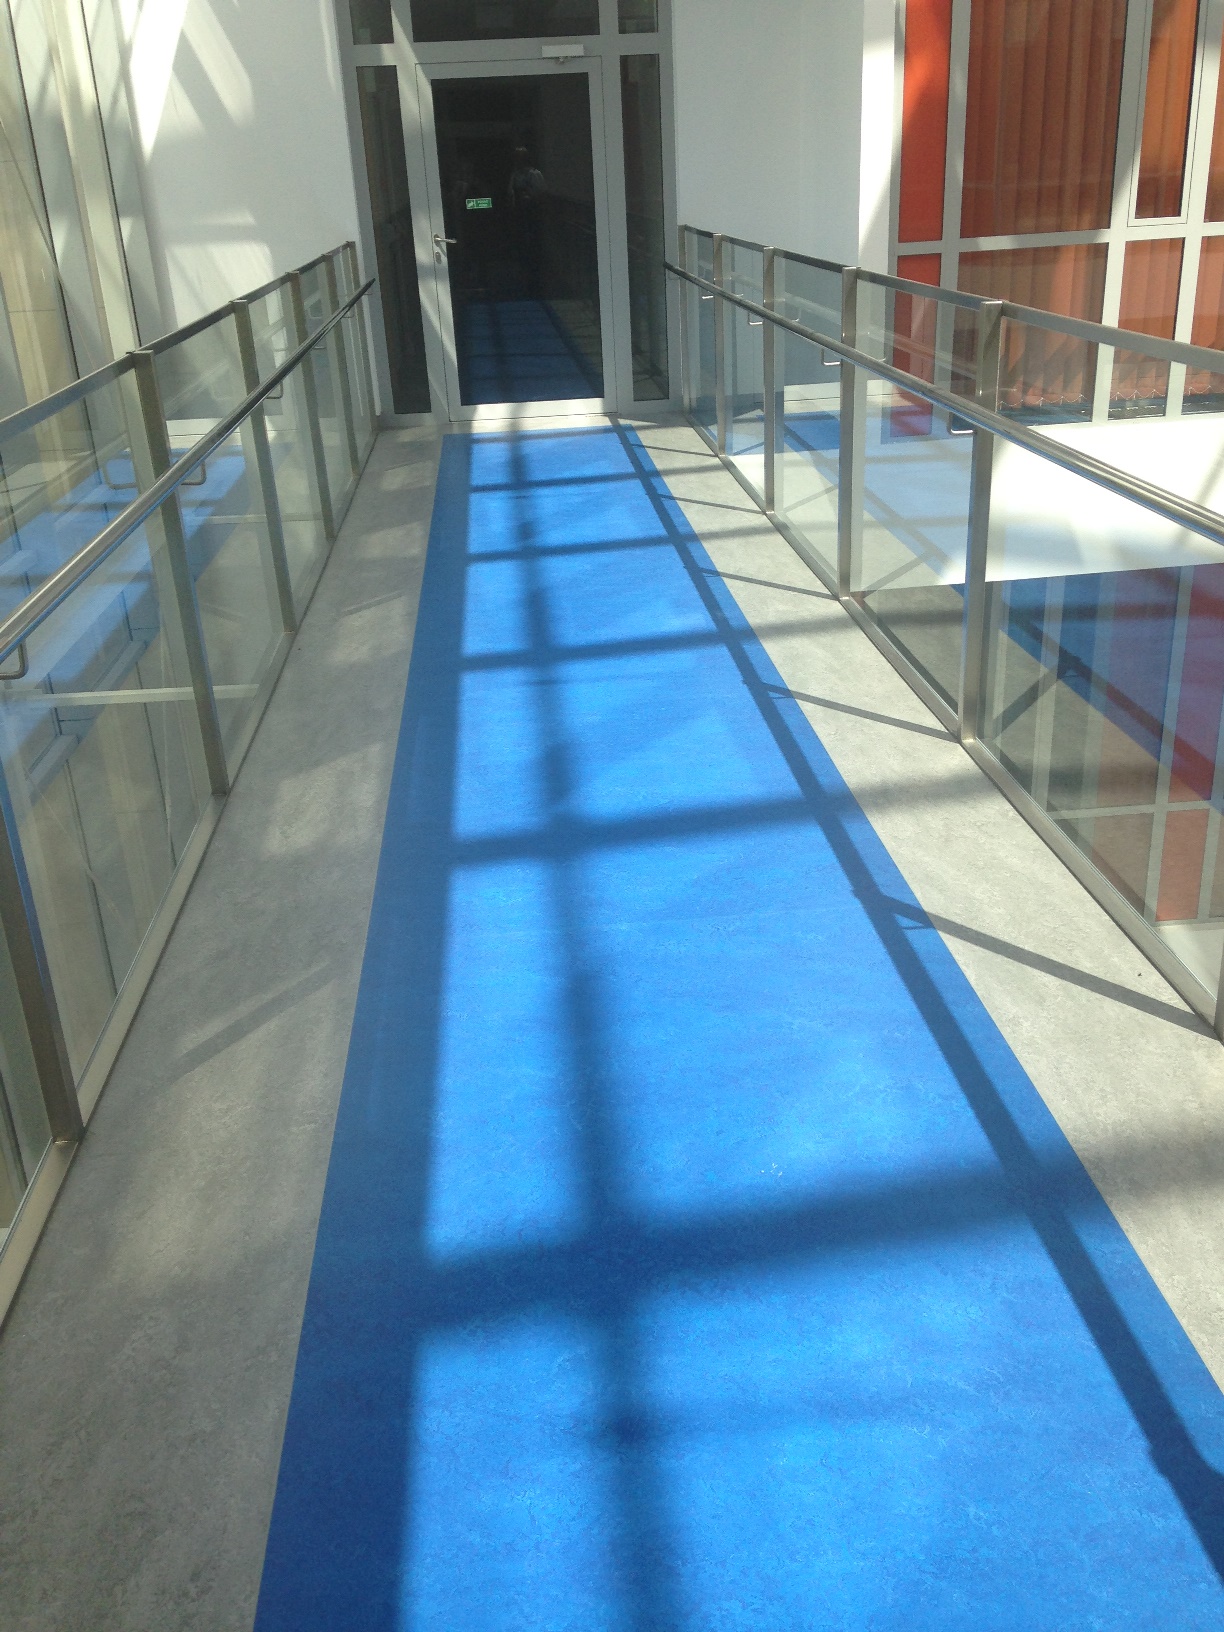 2 piętro - korytarz (mostek łączący skrzydła budynku) z wyodrębnionym kontrastowo traktem komunikacyjnym